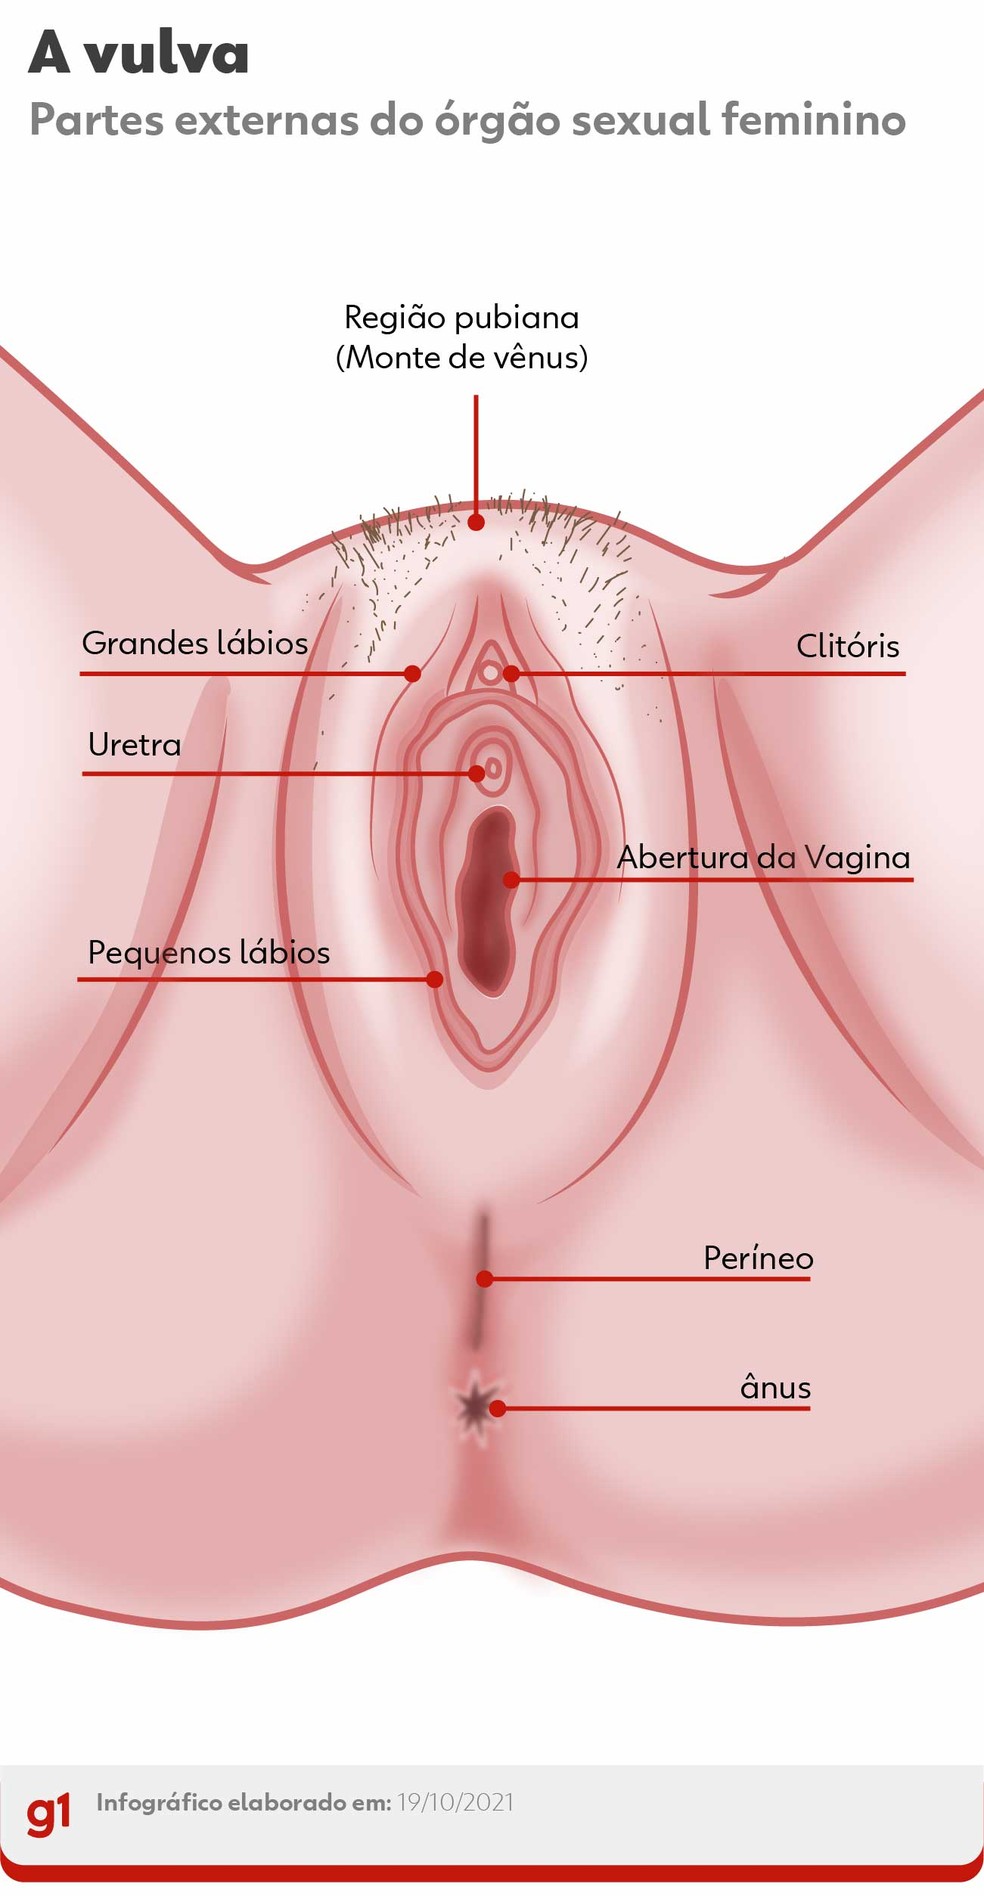 Imagens de uma vagina